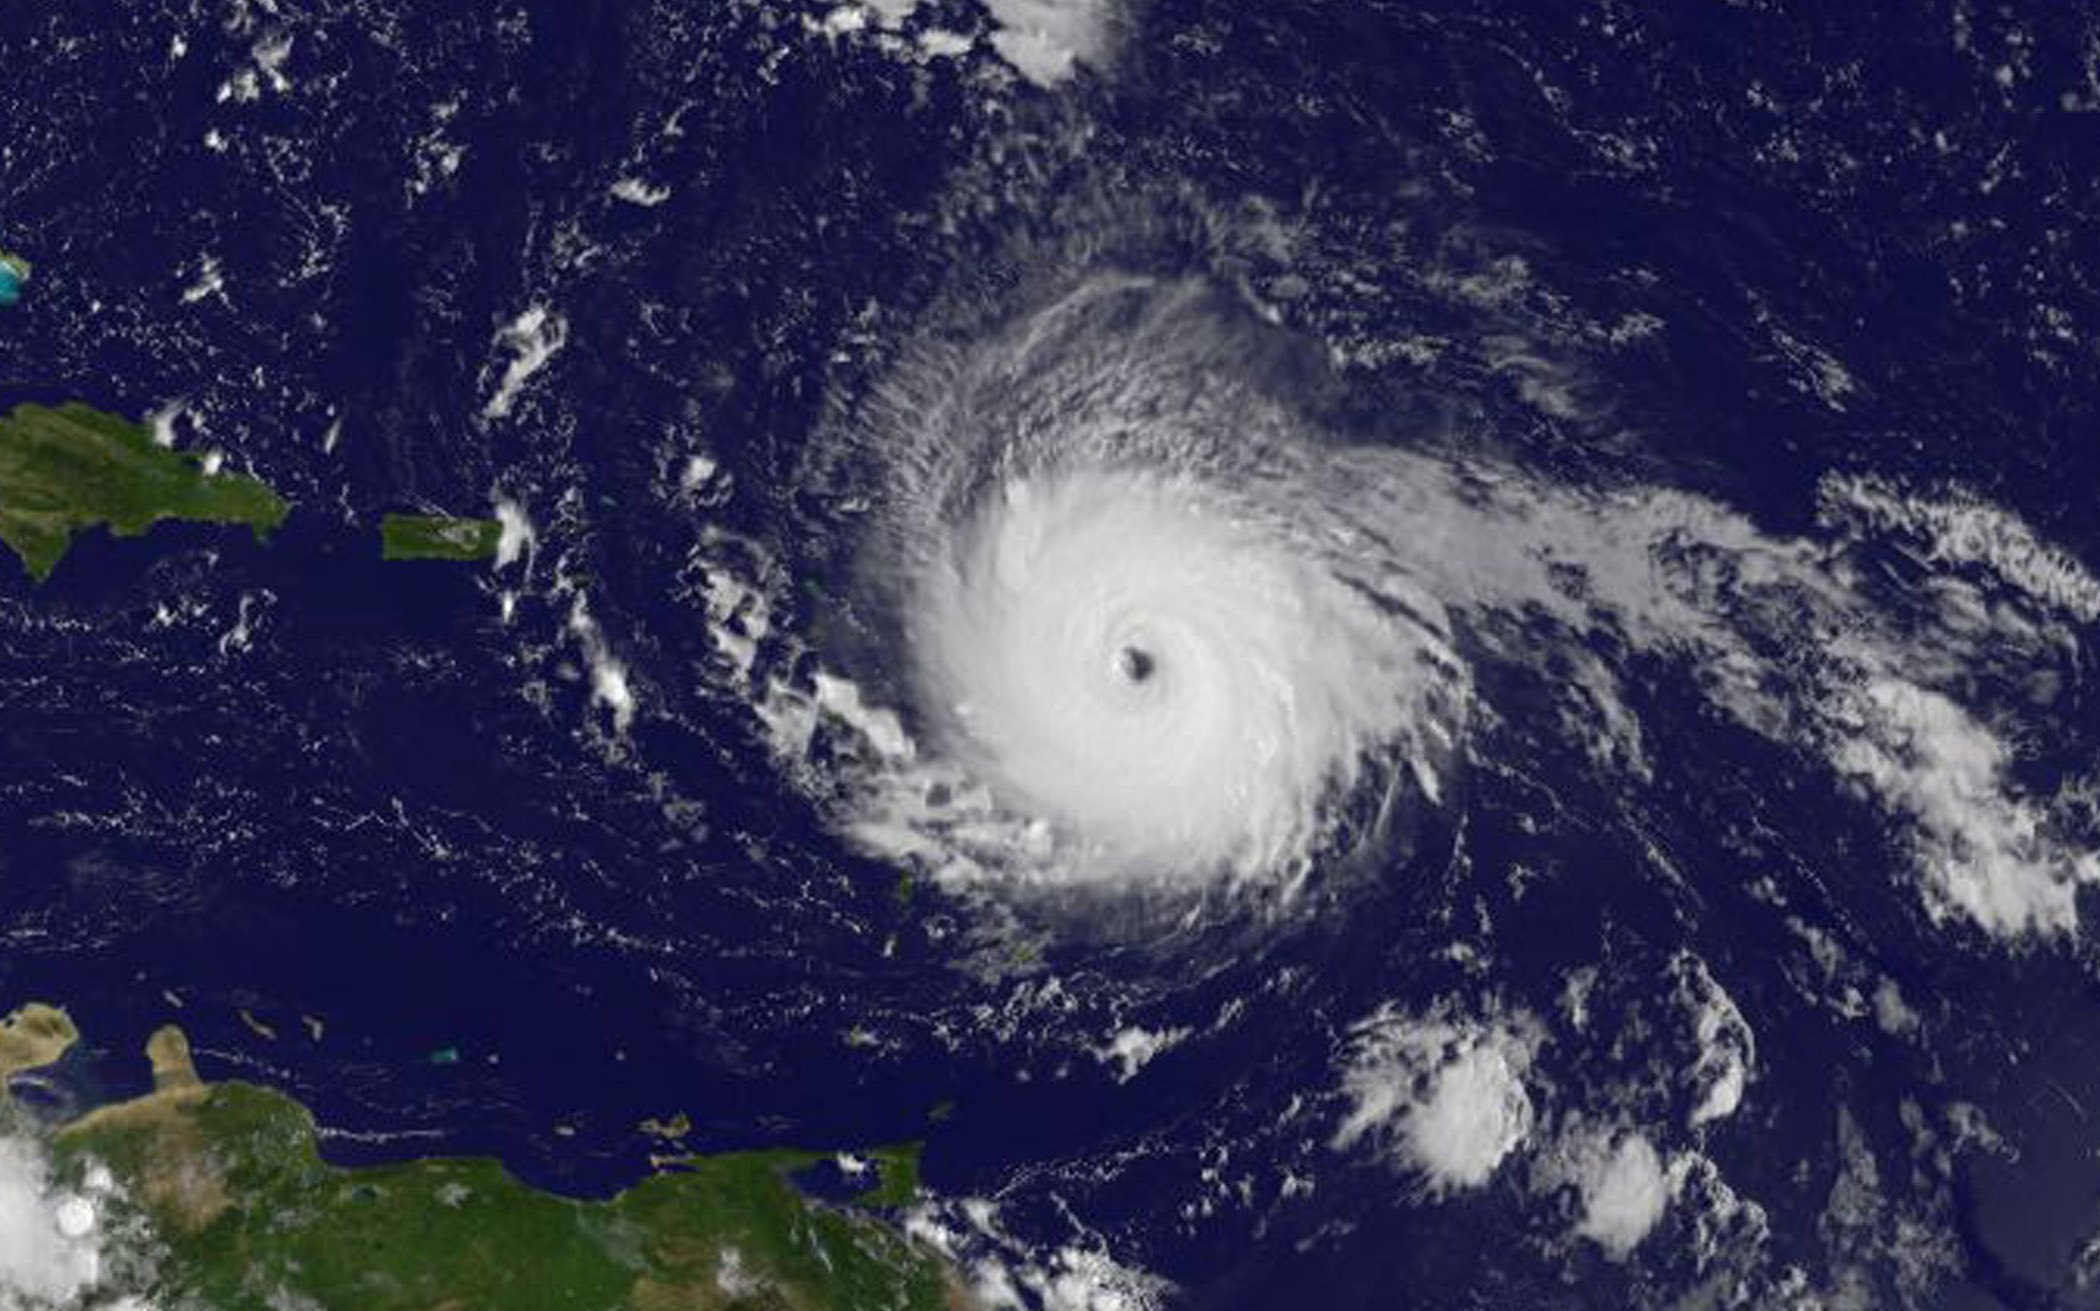 Tormenta tropical Jose se transforma en huracán en el Atlántico, según meteorólogos